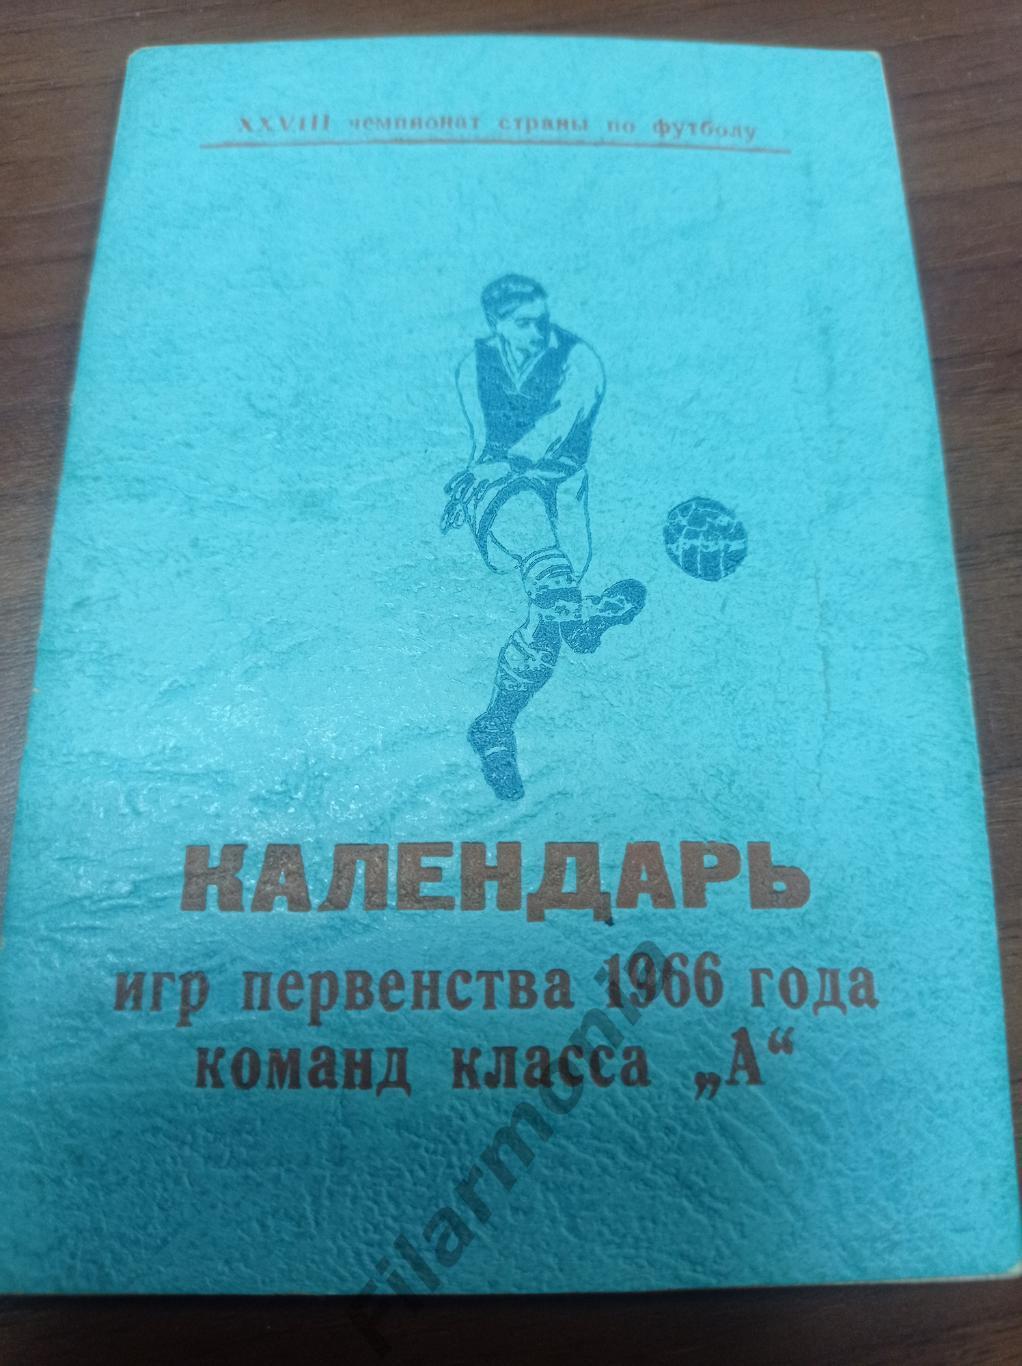 1966 тир. 750 Календарь футбол, служебный Ленинград